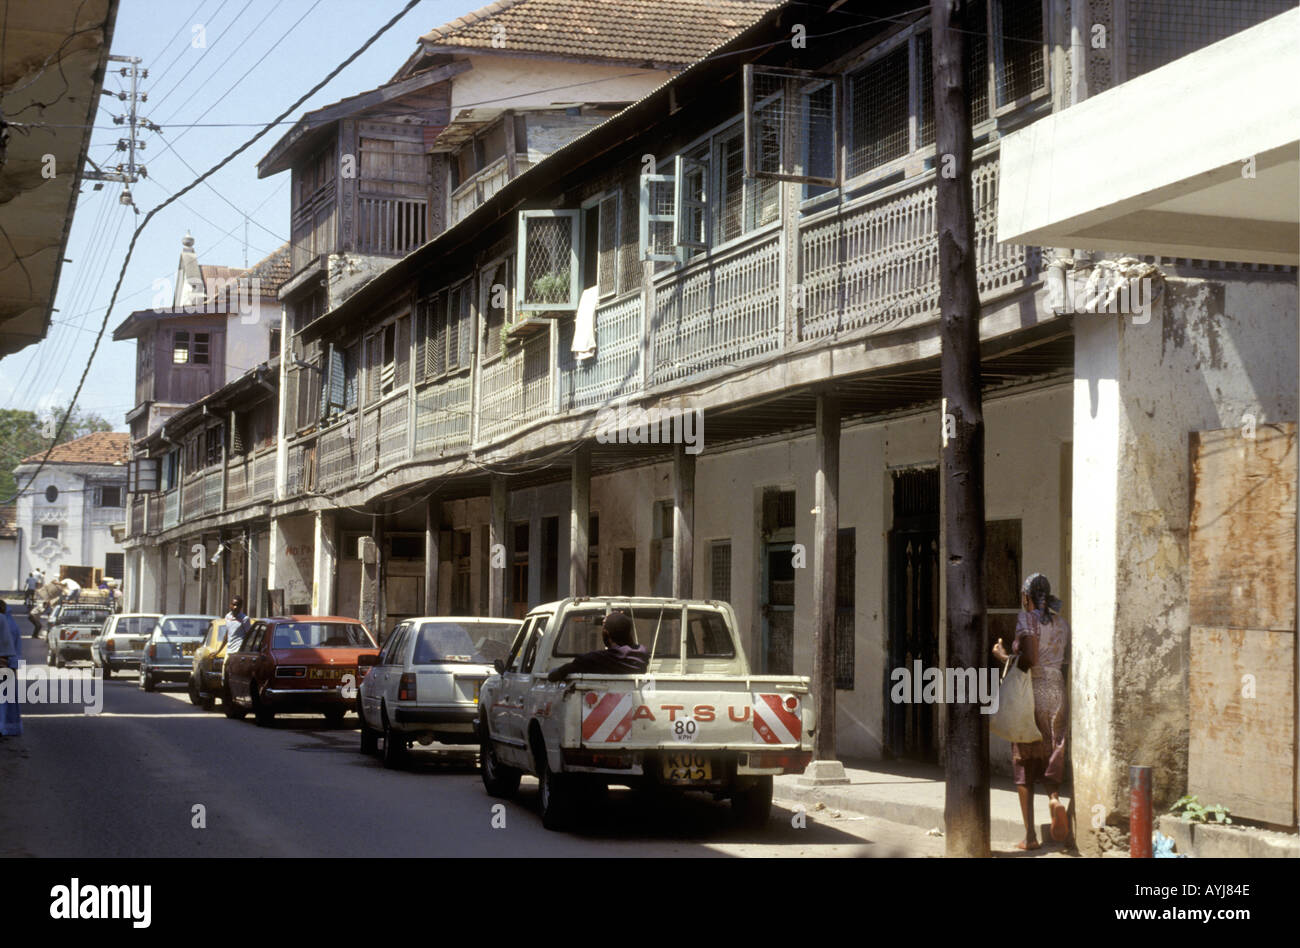 Una calle de antiguos edificios con balcones de madera tallada tradicional cerca del Mandhry en el casco antiguo de la ciudad de Mombasa. Foto de stock